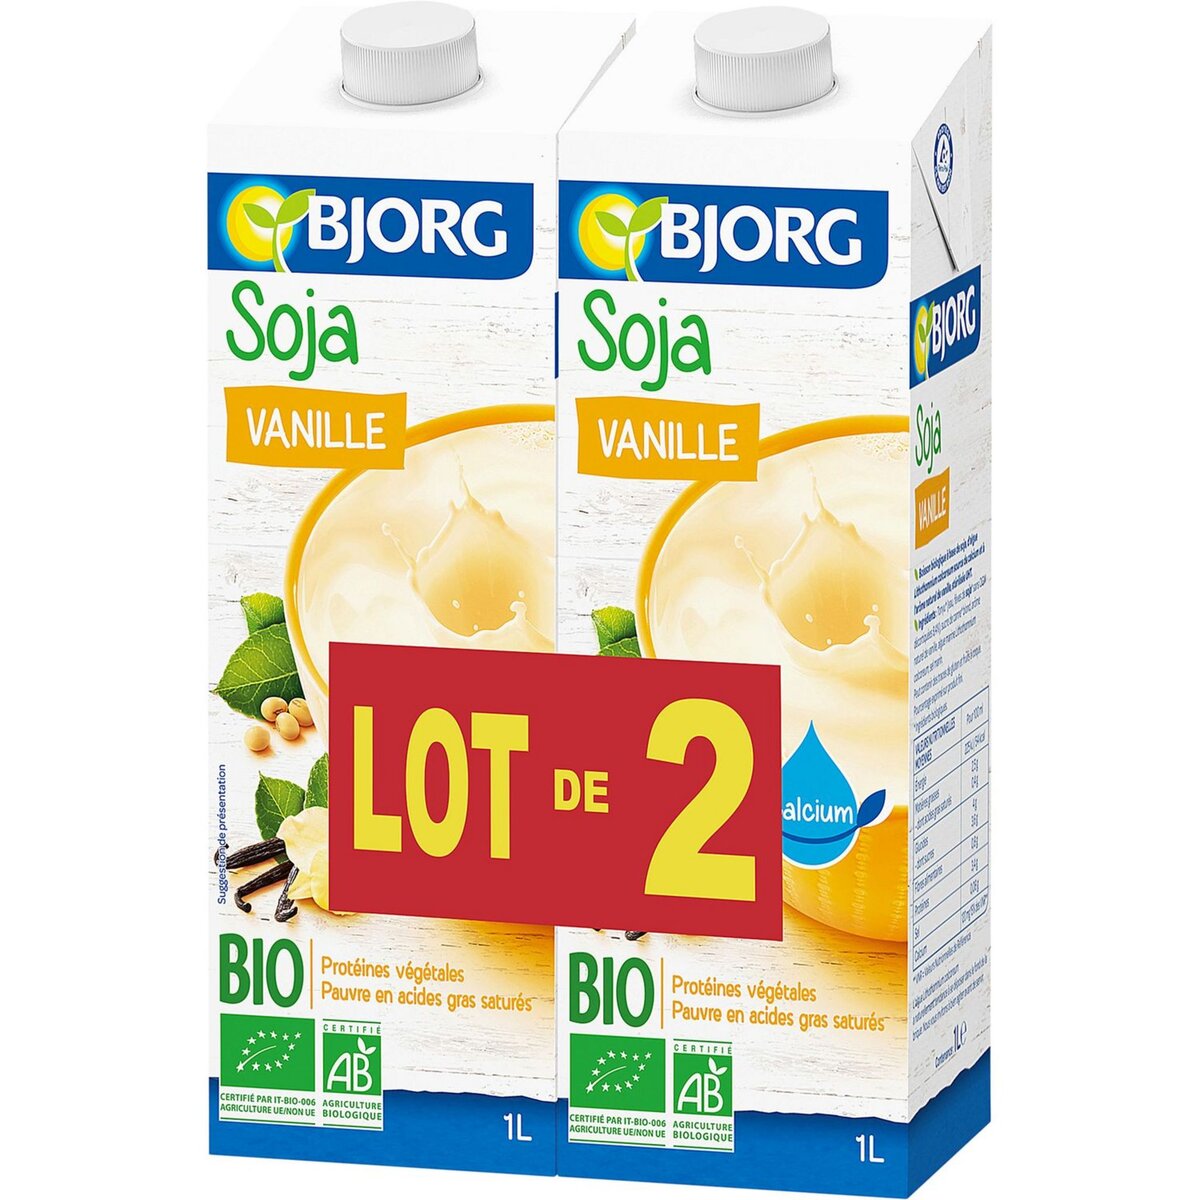 BJORG Bjorg soja vanille calcium bio 2x1l